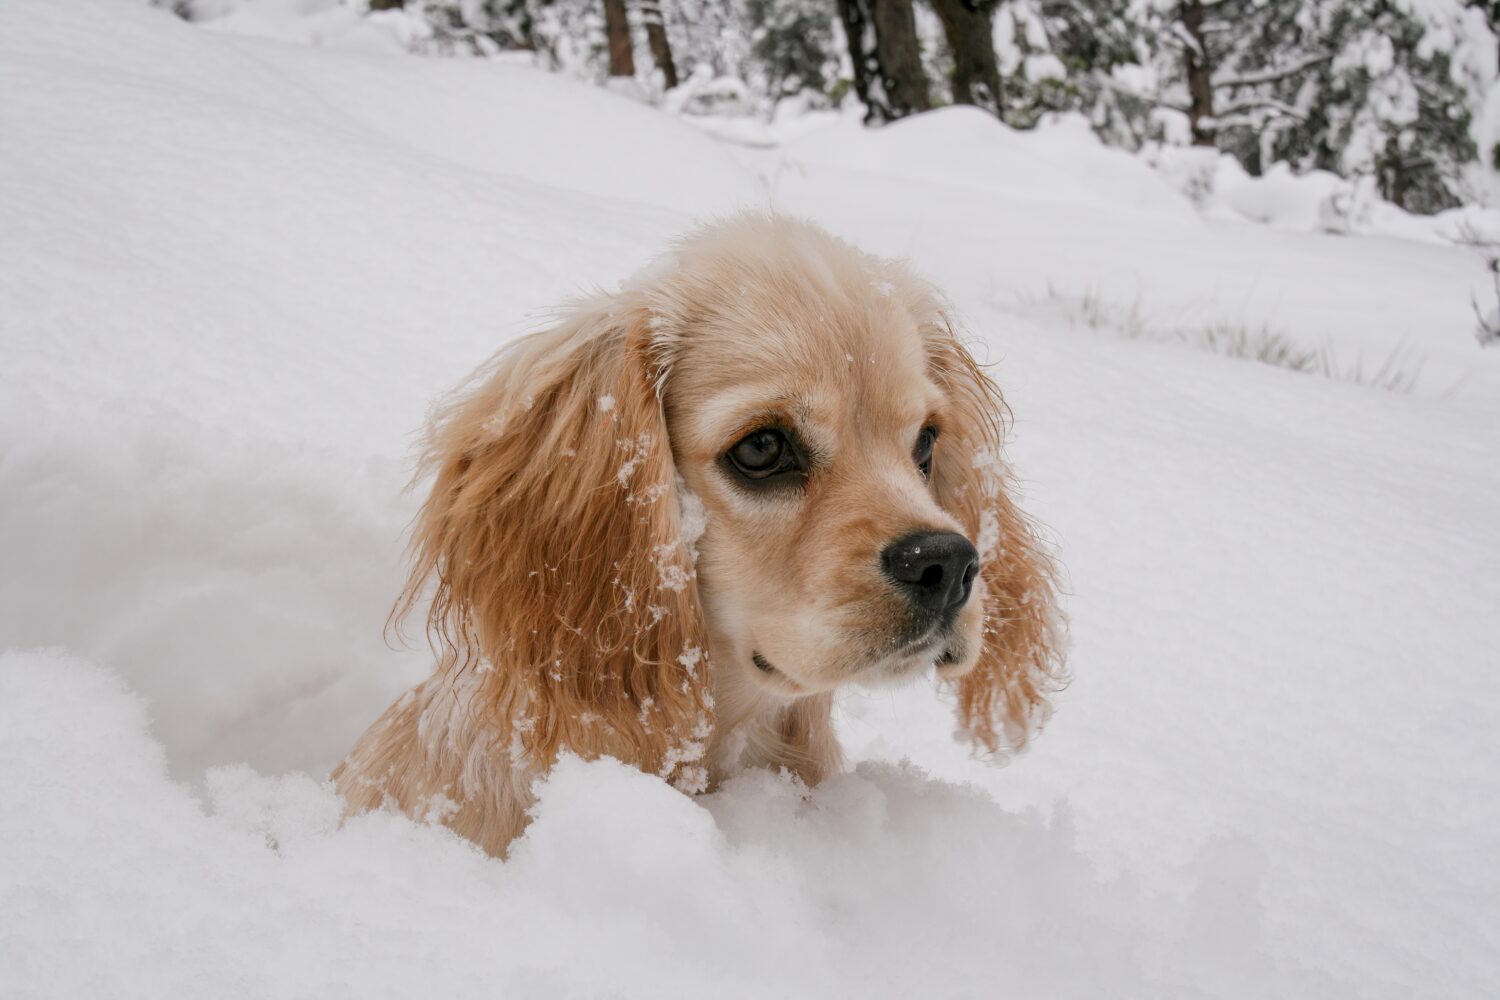 Un bel cucciolo di Cocker Spaniel che gioca nella neve fresca caduta